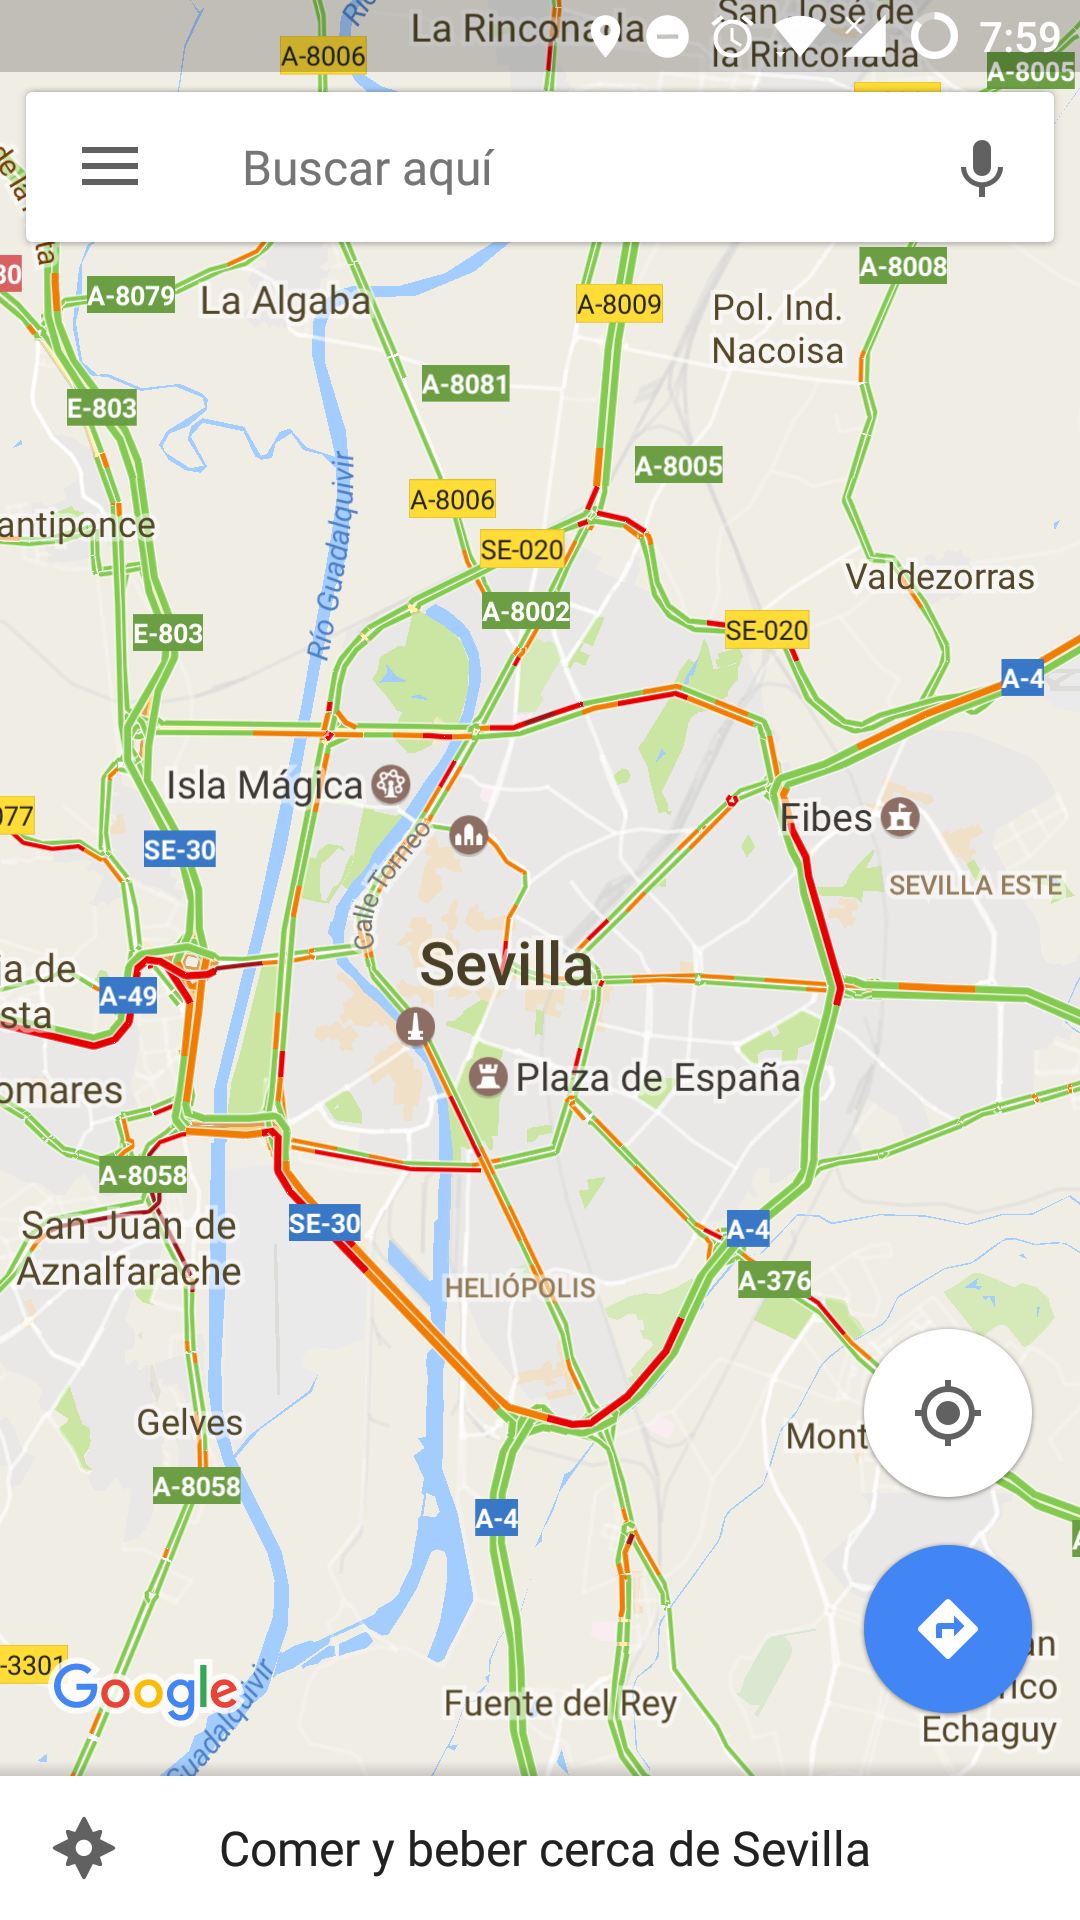 Tráfico en tiempo real de Sevilla visto con la aplicación de Google Maps